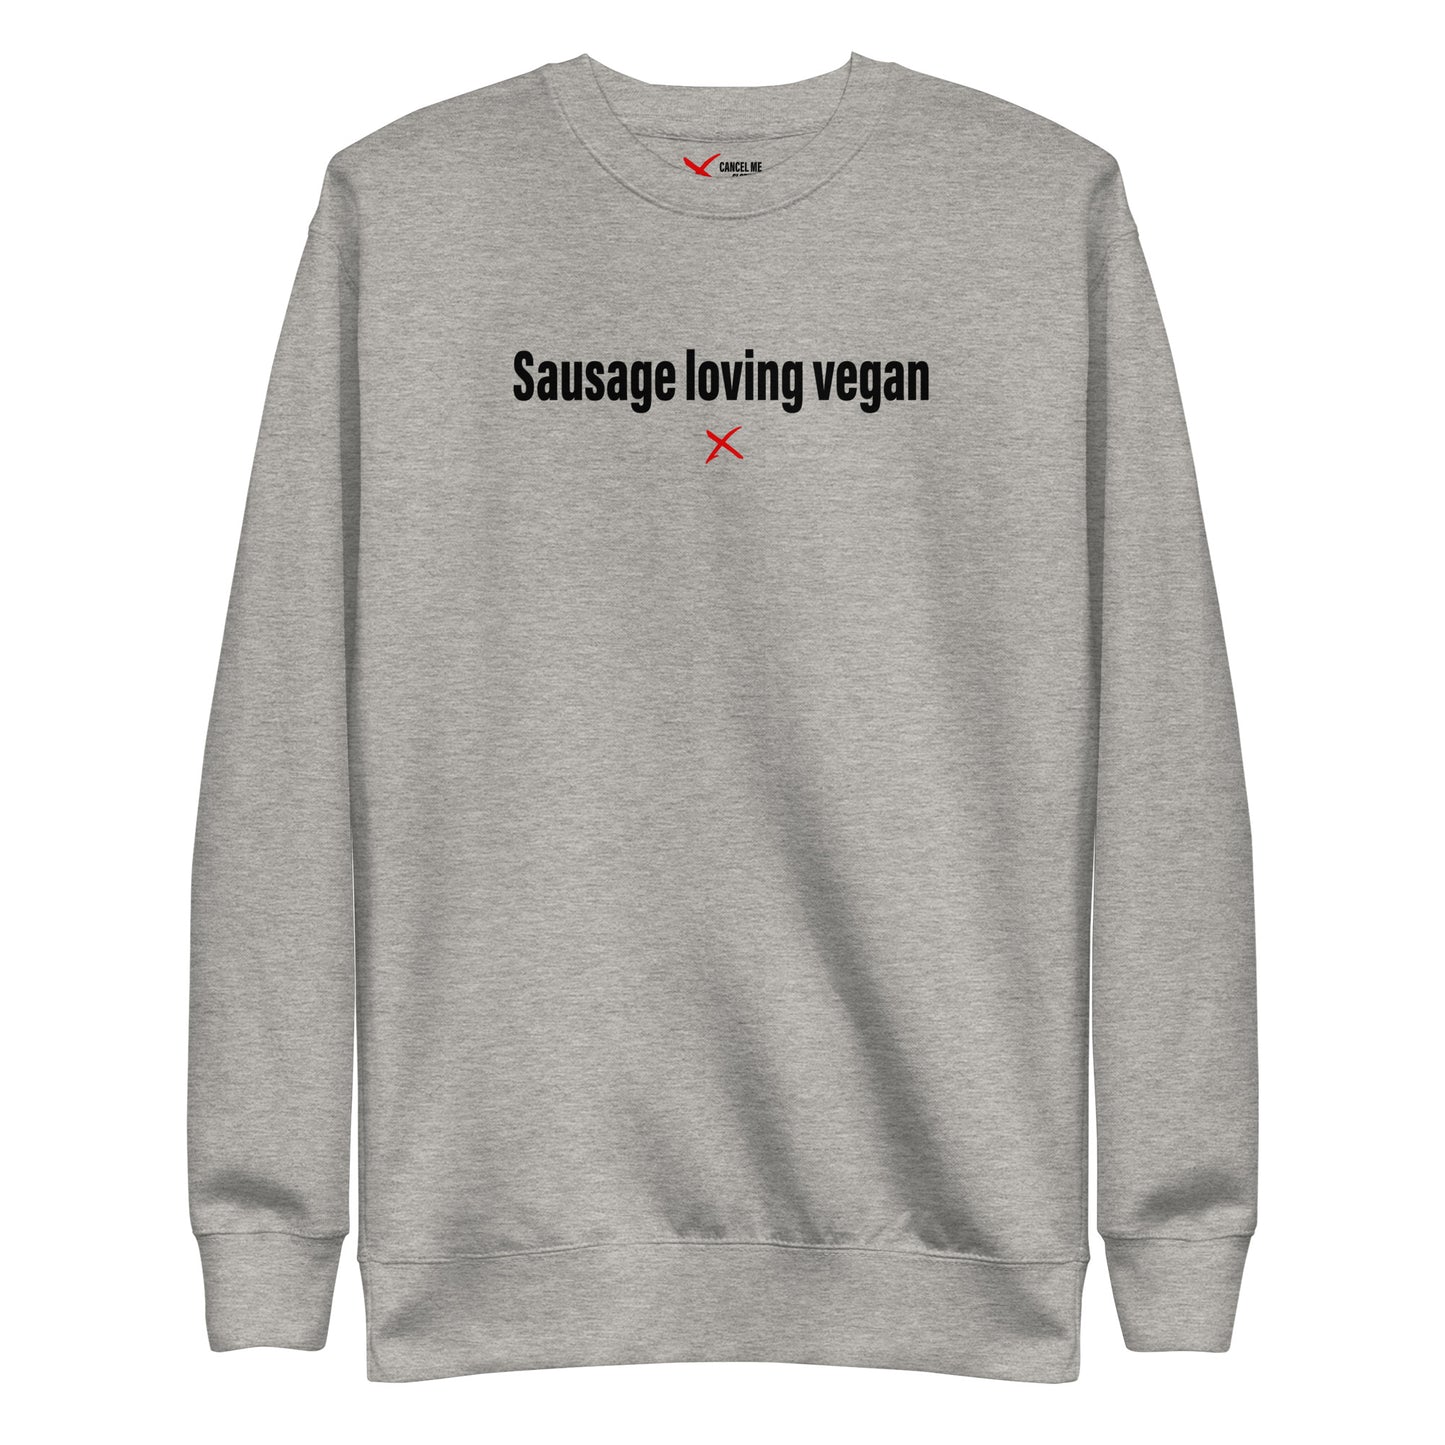 Sausage loving vegan - Sweatshirt